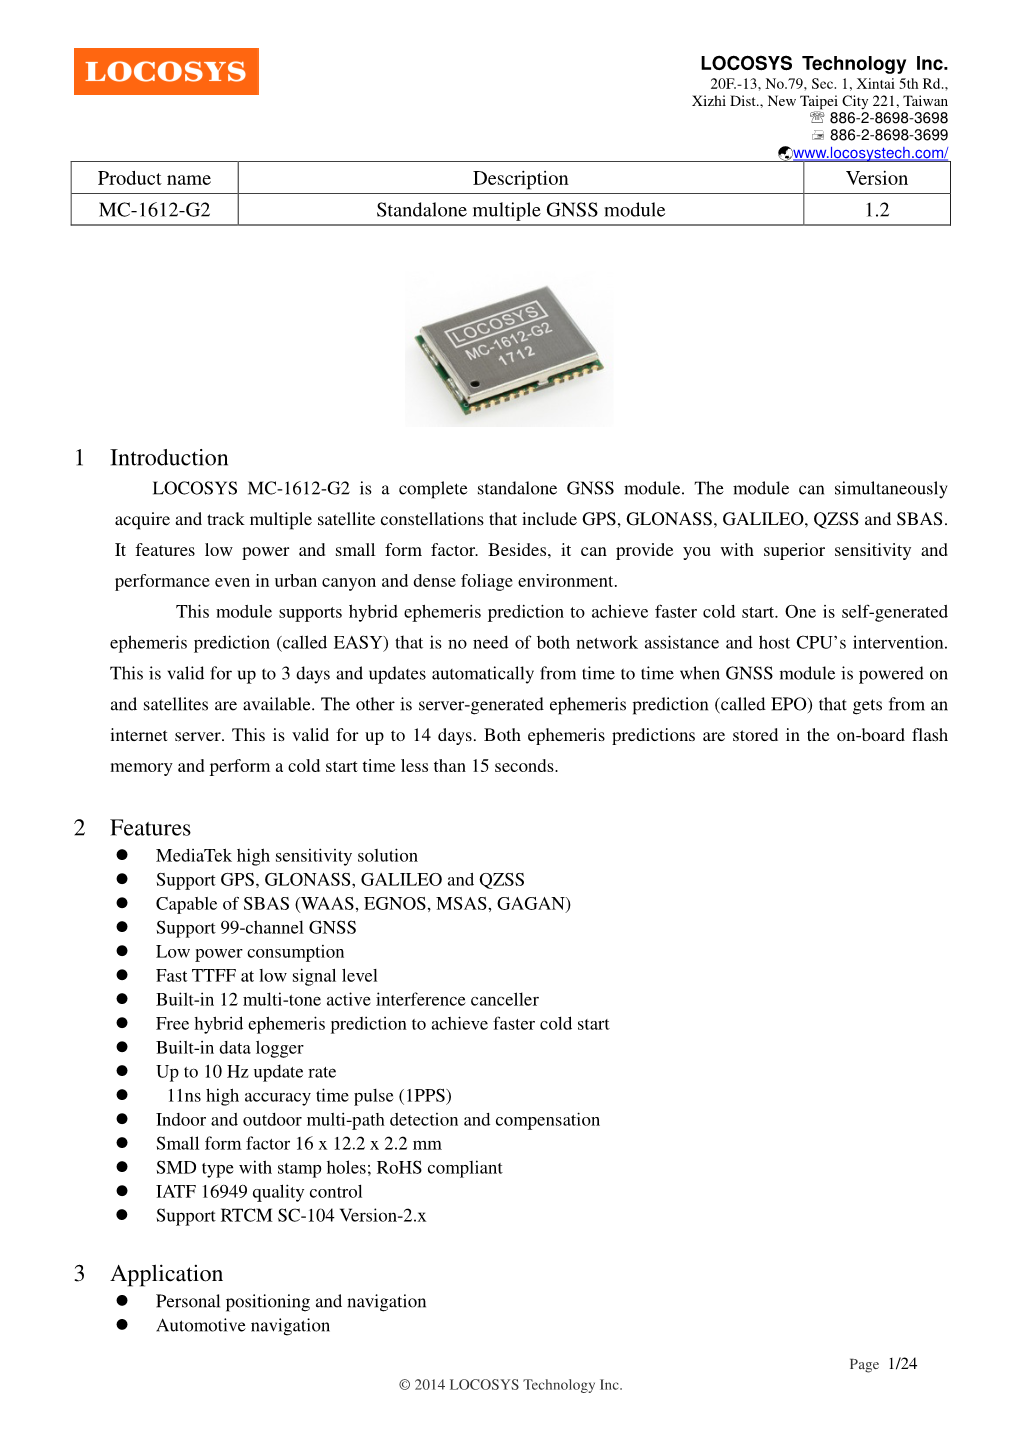 MC-1612-G2 GNSS Module Datasheet V1.2